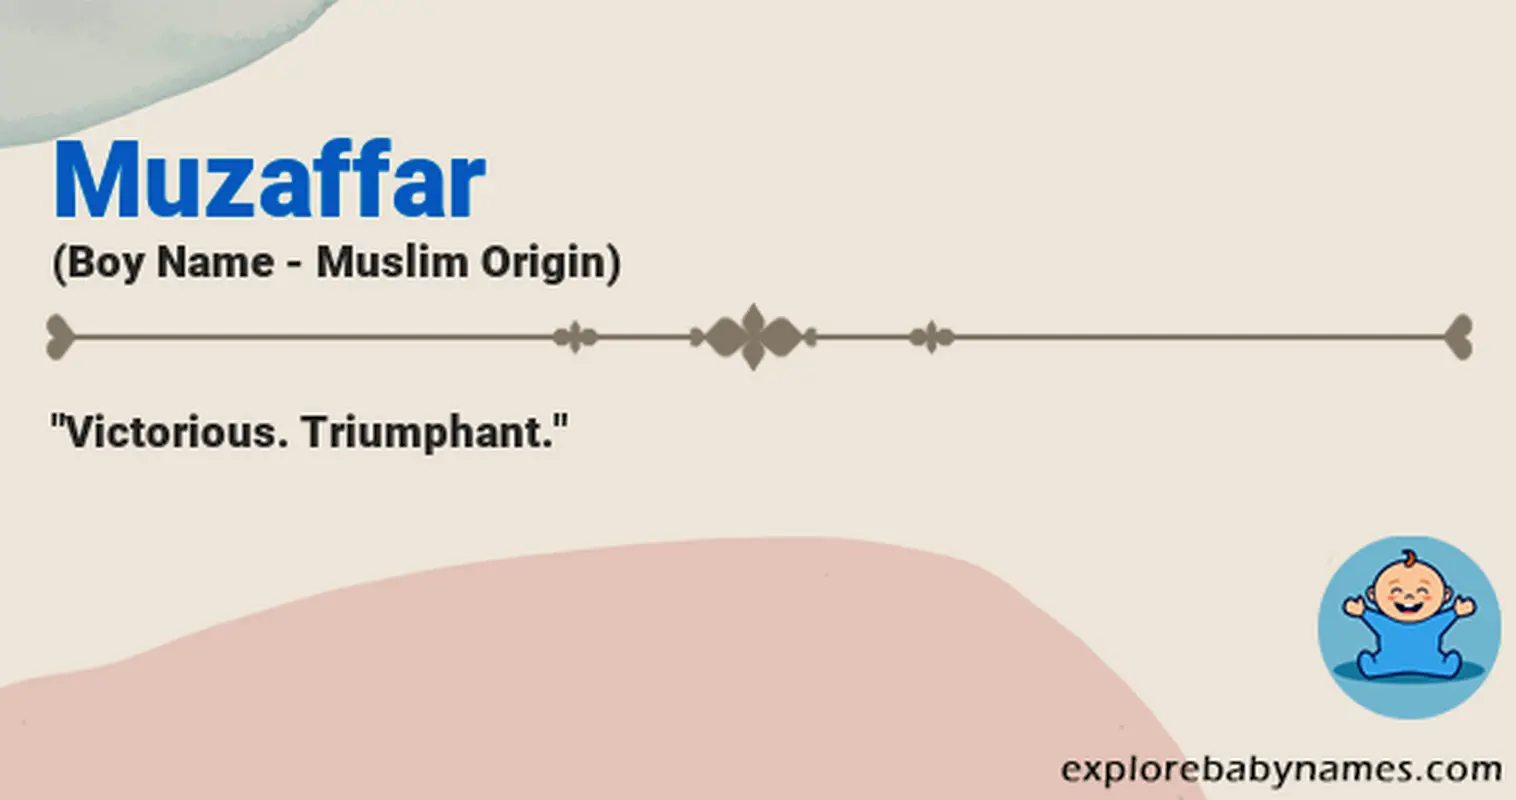 Meaning of Muzaffar